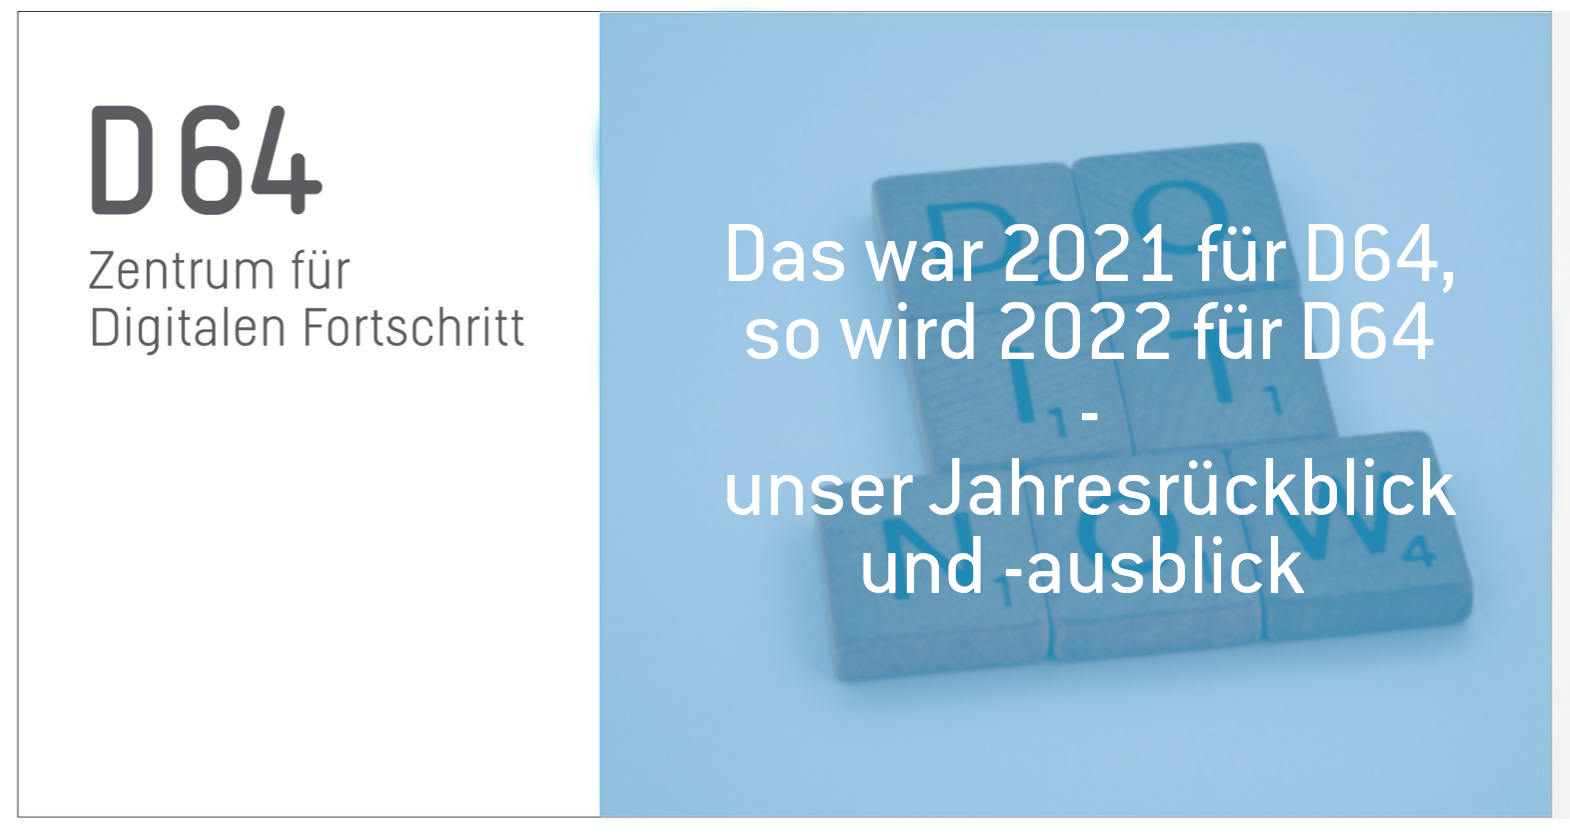 Sharepic mit folgendem Text: Das war 2021 für D64, so wird 2022 für D64. Unser Jahresrückblick und -ausblick